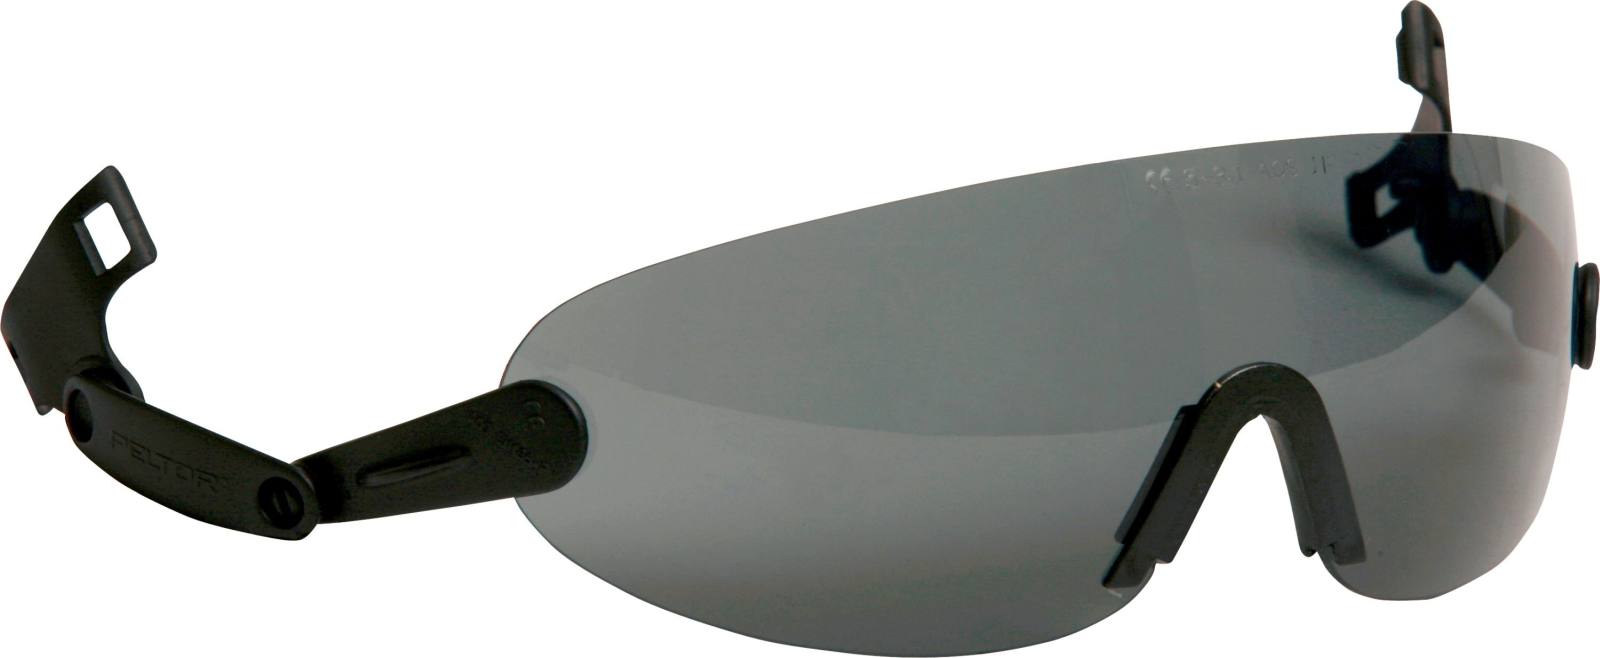 Lunettes de protection intégrables 3M pour casque de sécurité, gris, V9G